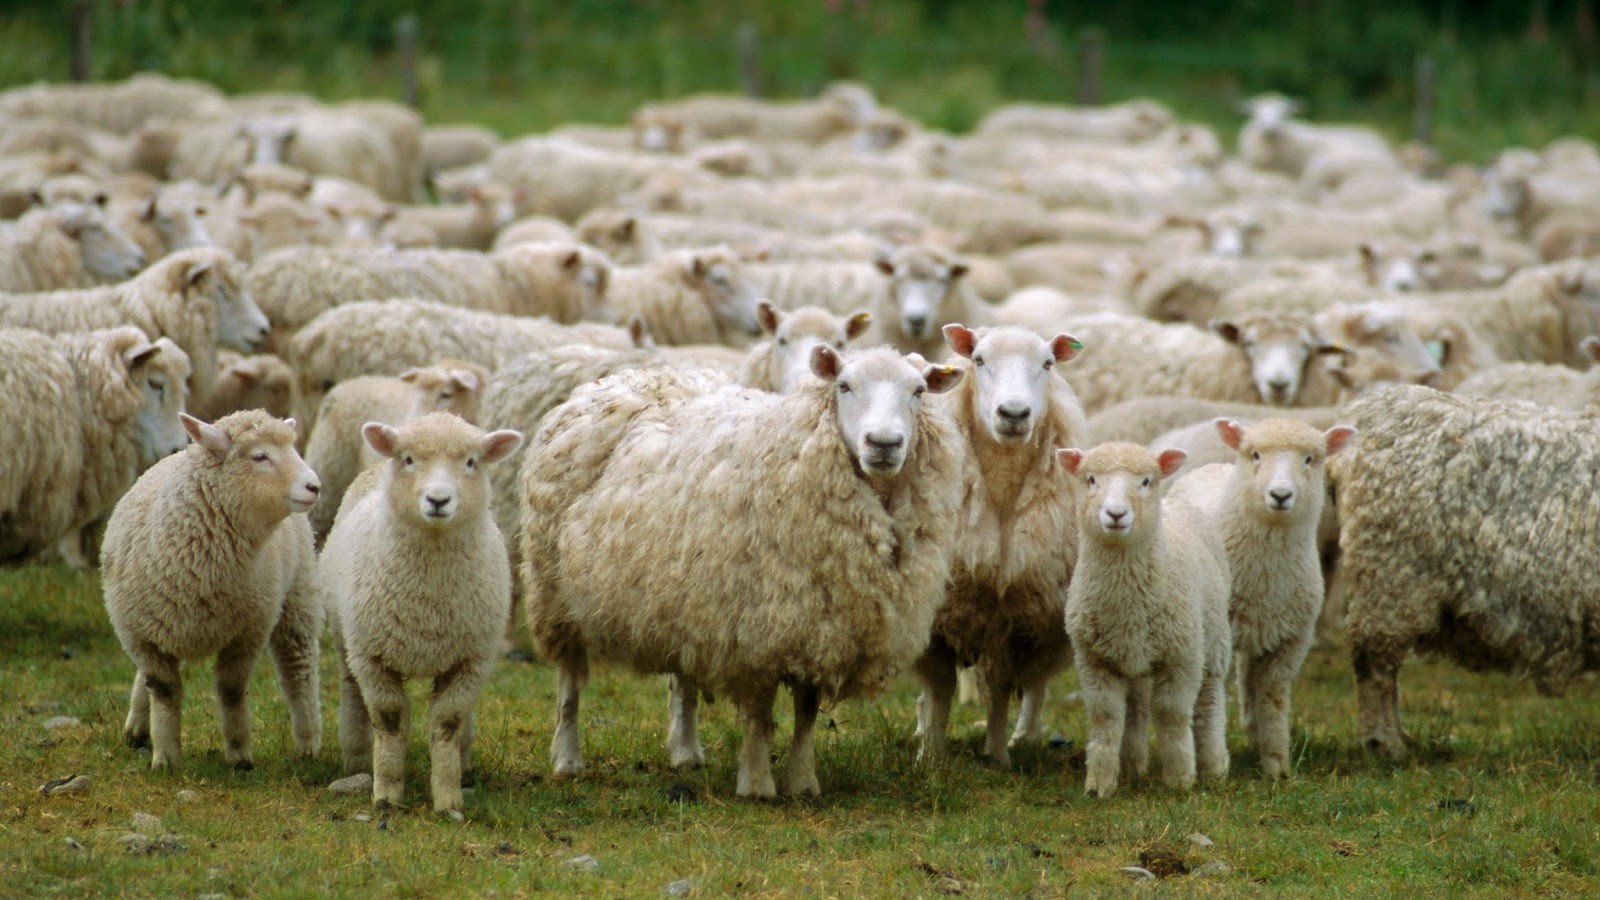 Πώς συνδέεται η σκλήρυνση κατά πλάκας με τα πρόβατα